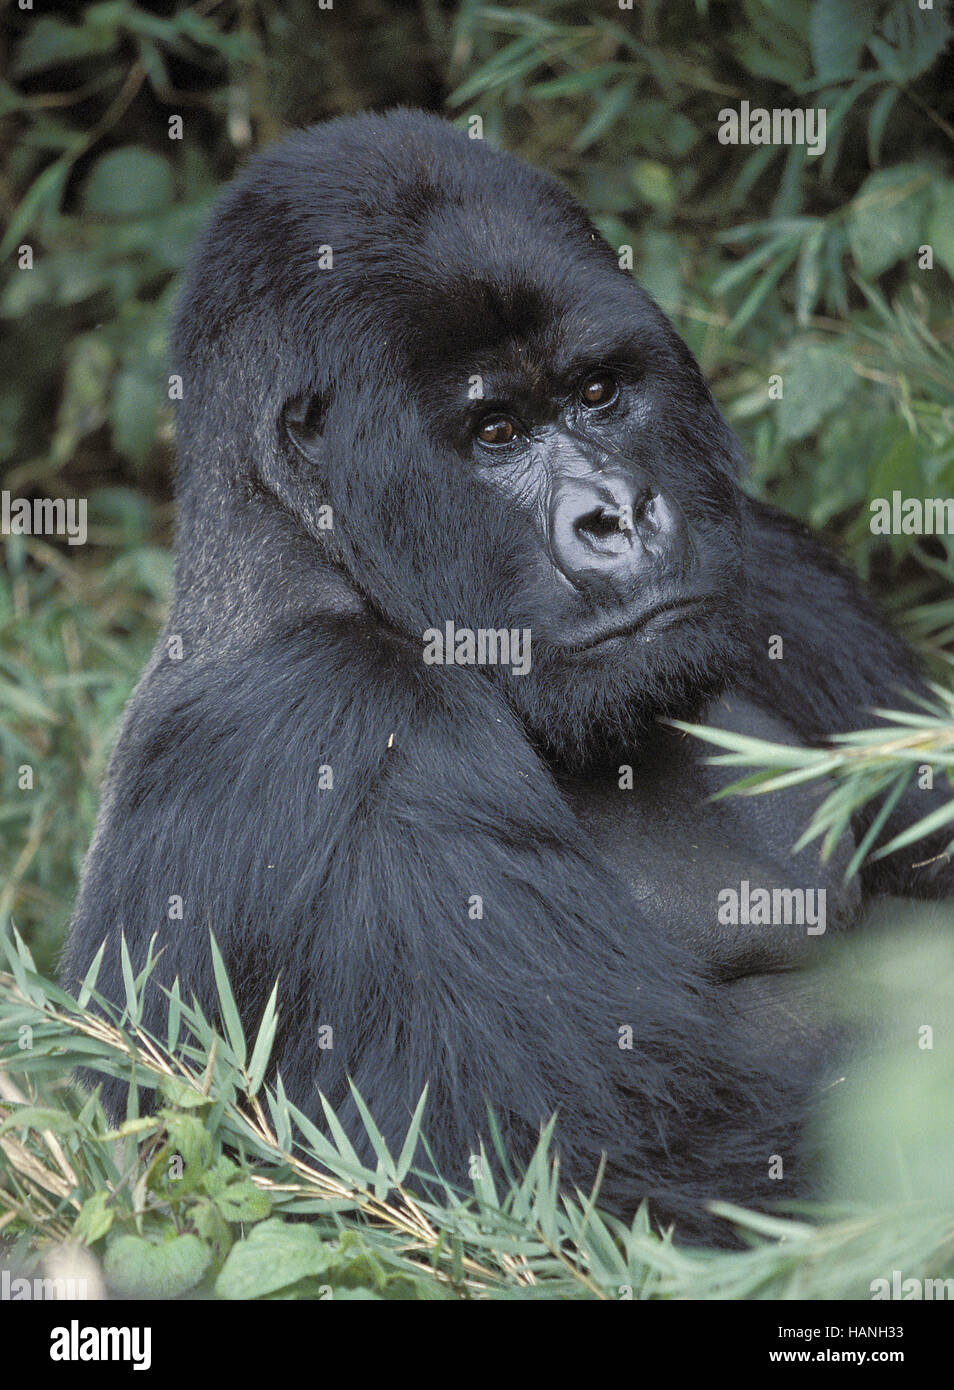 Gorilla, Mountain gorilla, Stock Photo